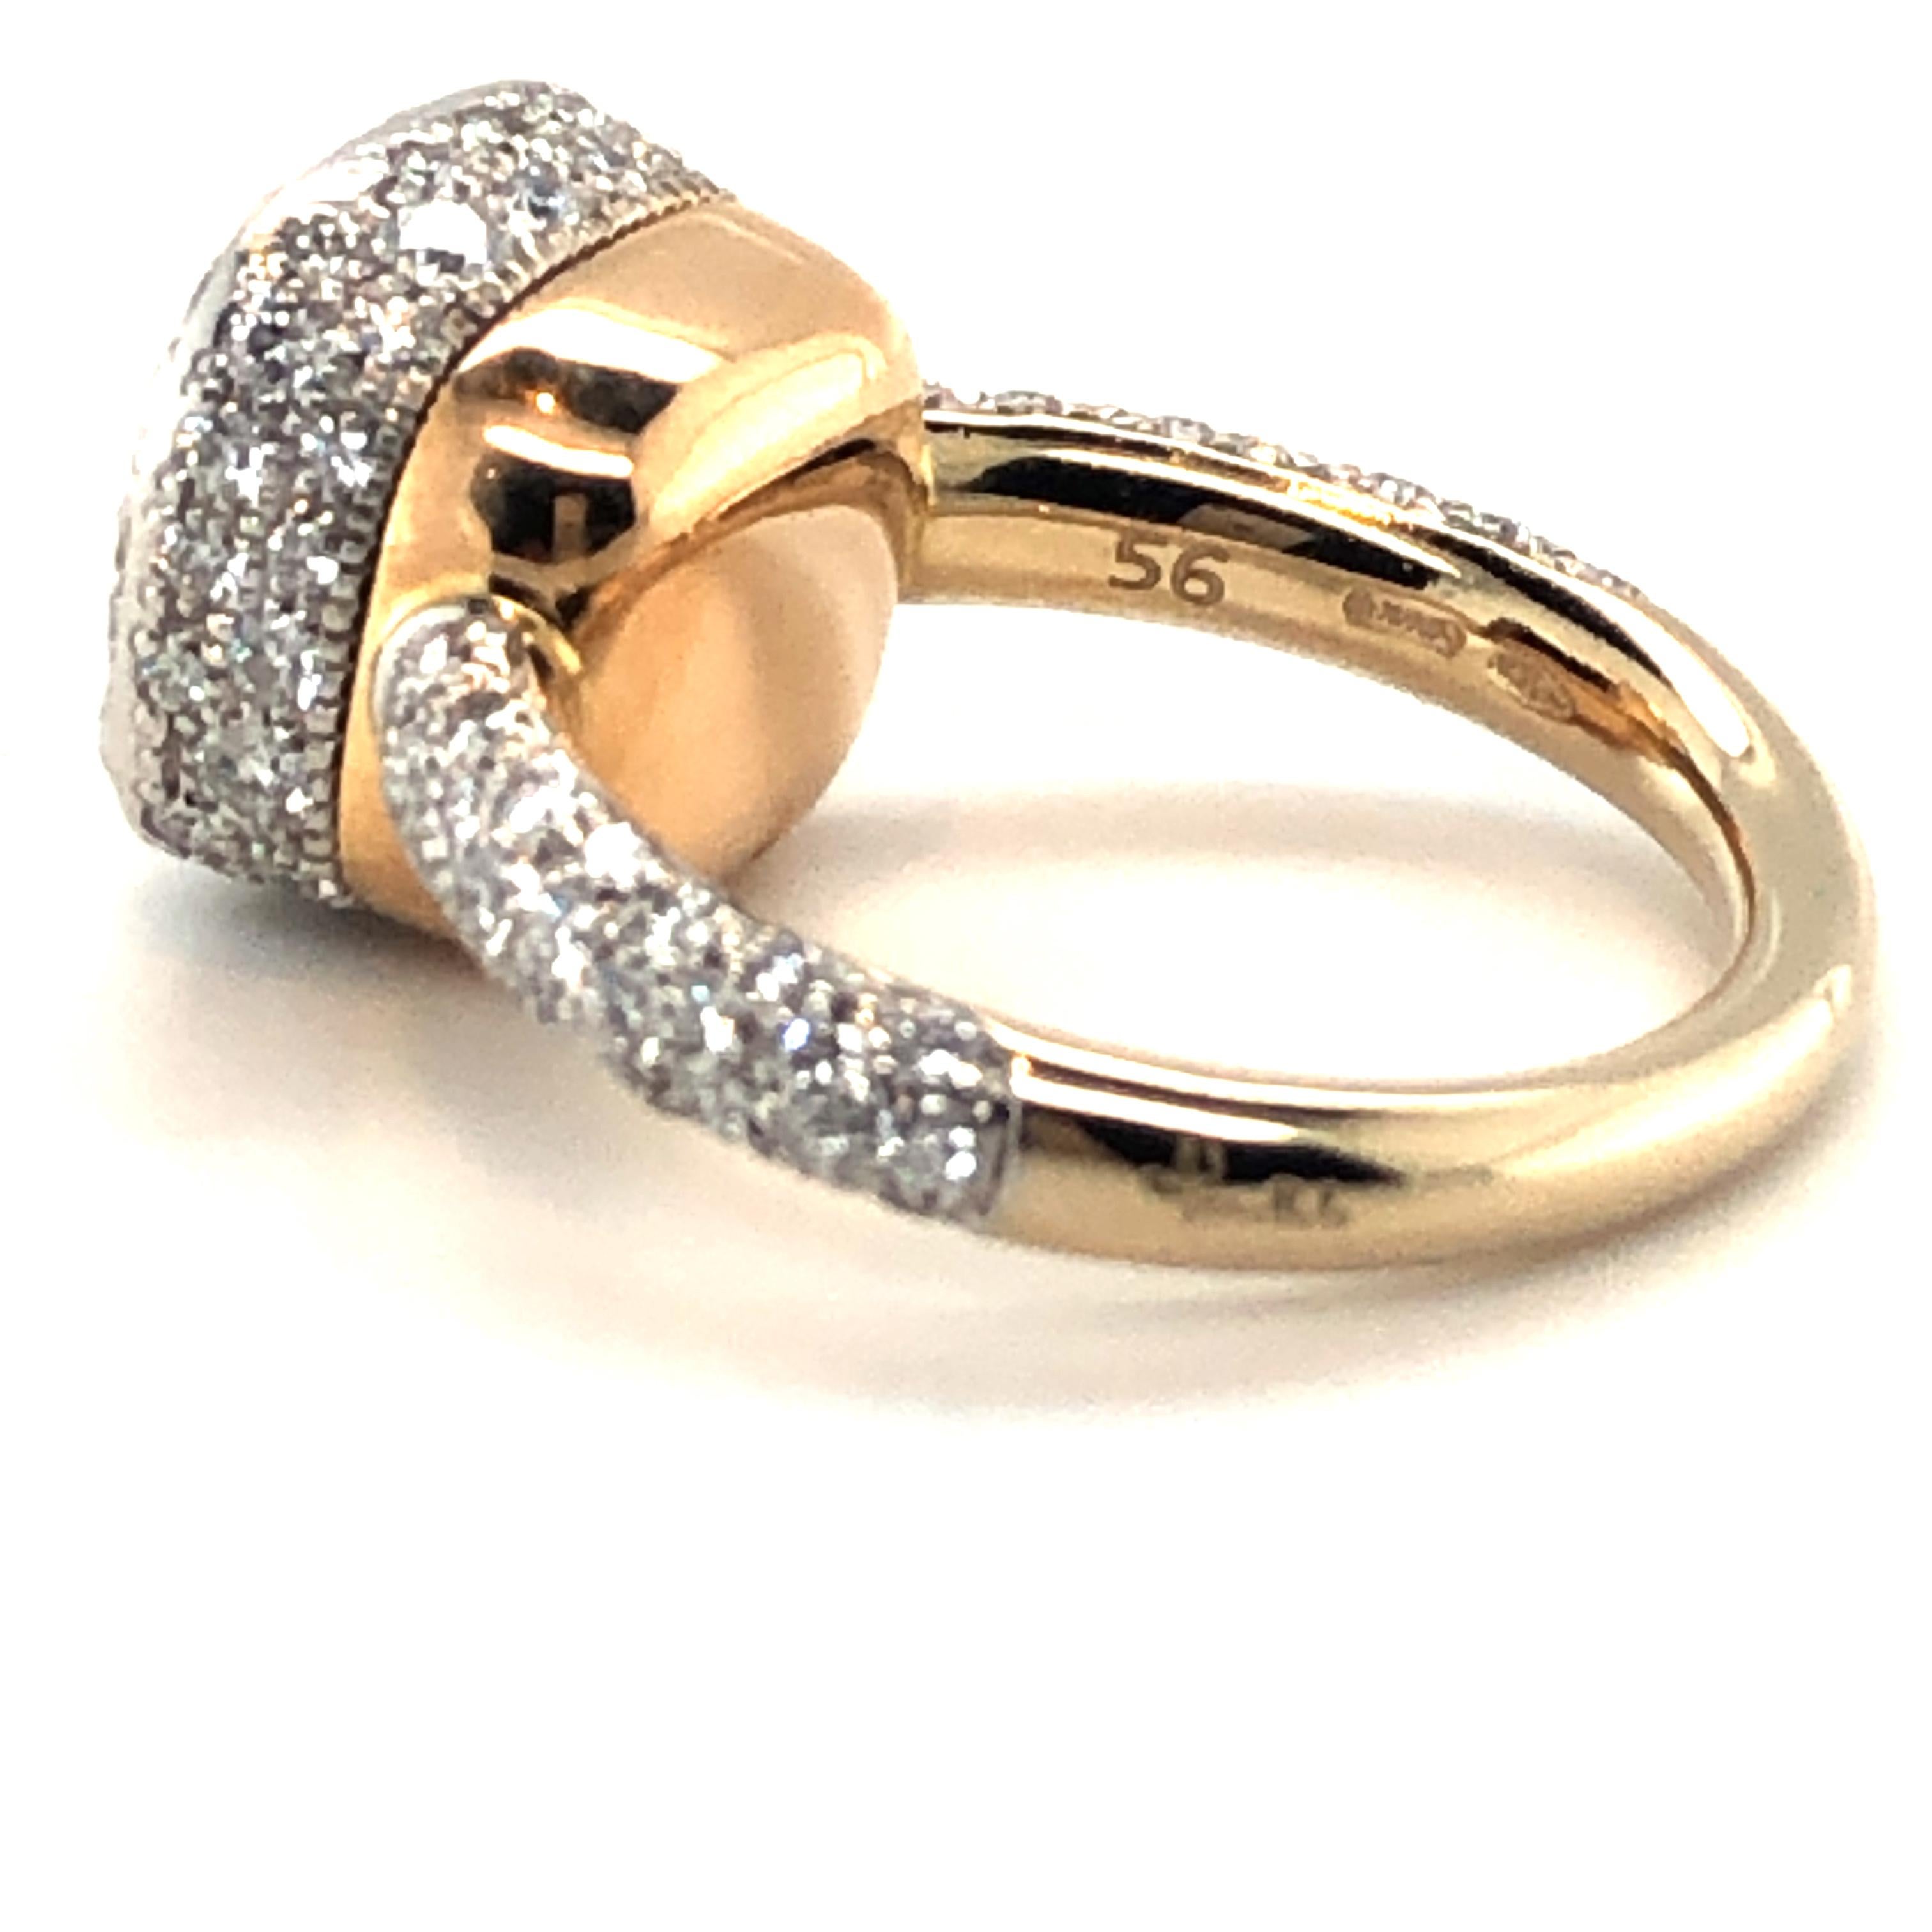 Brilliant Cut Pomellato Nudo Maxi Solitaire Ring with Diamonds in 18 Karat White and Rose Gold